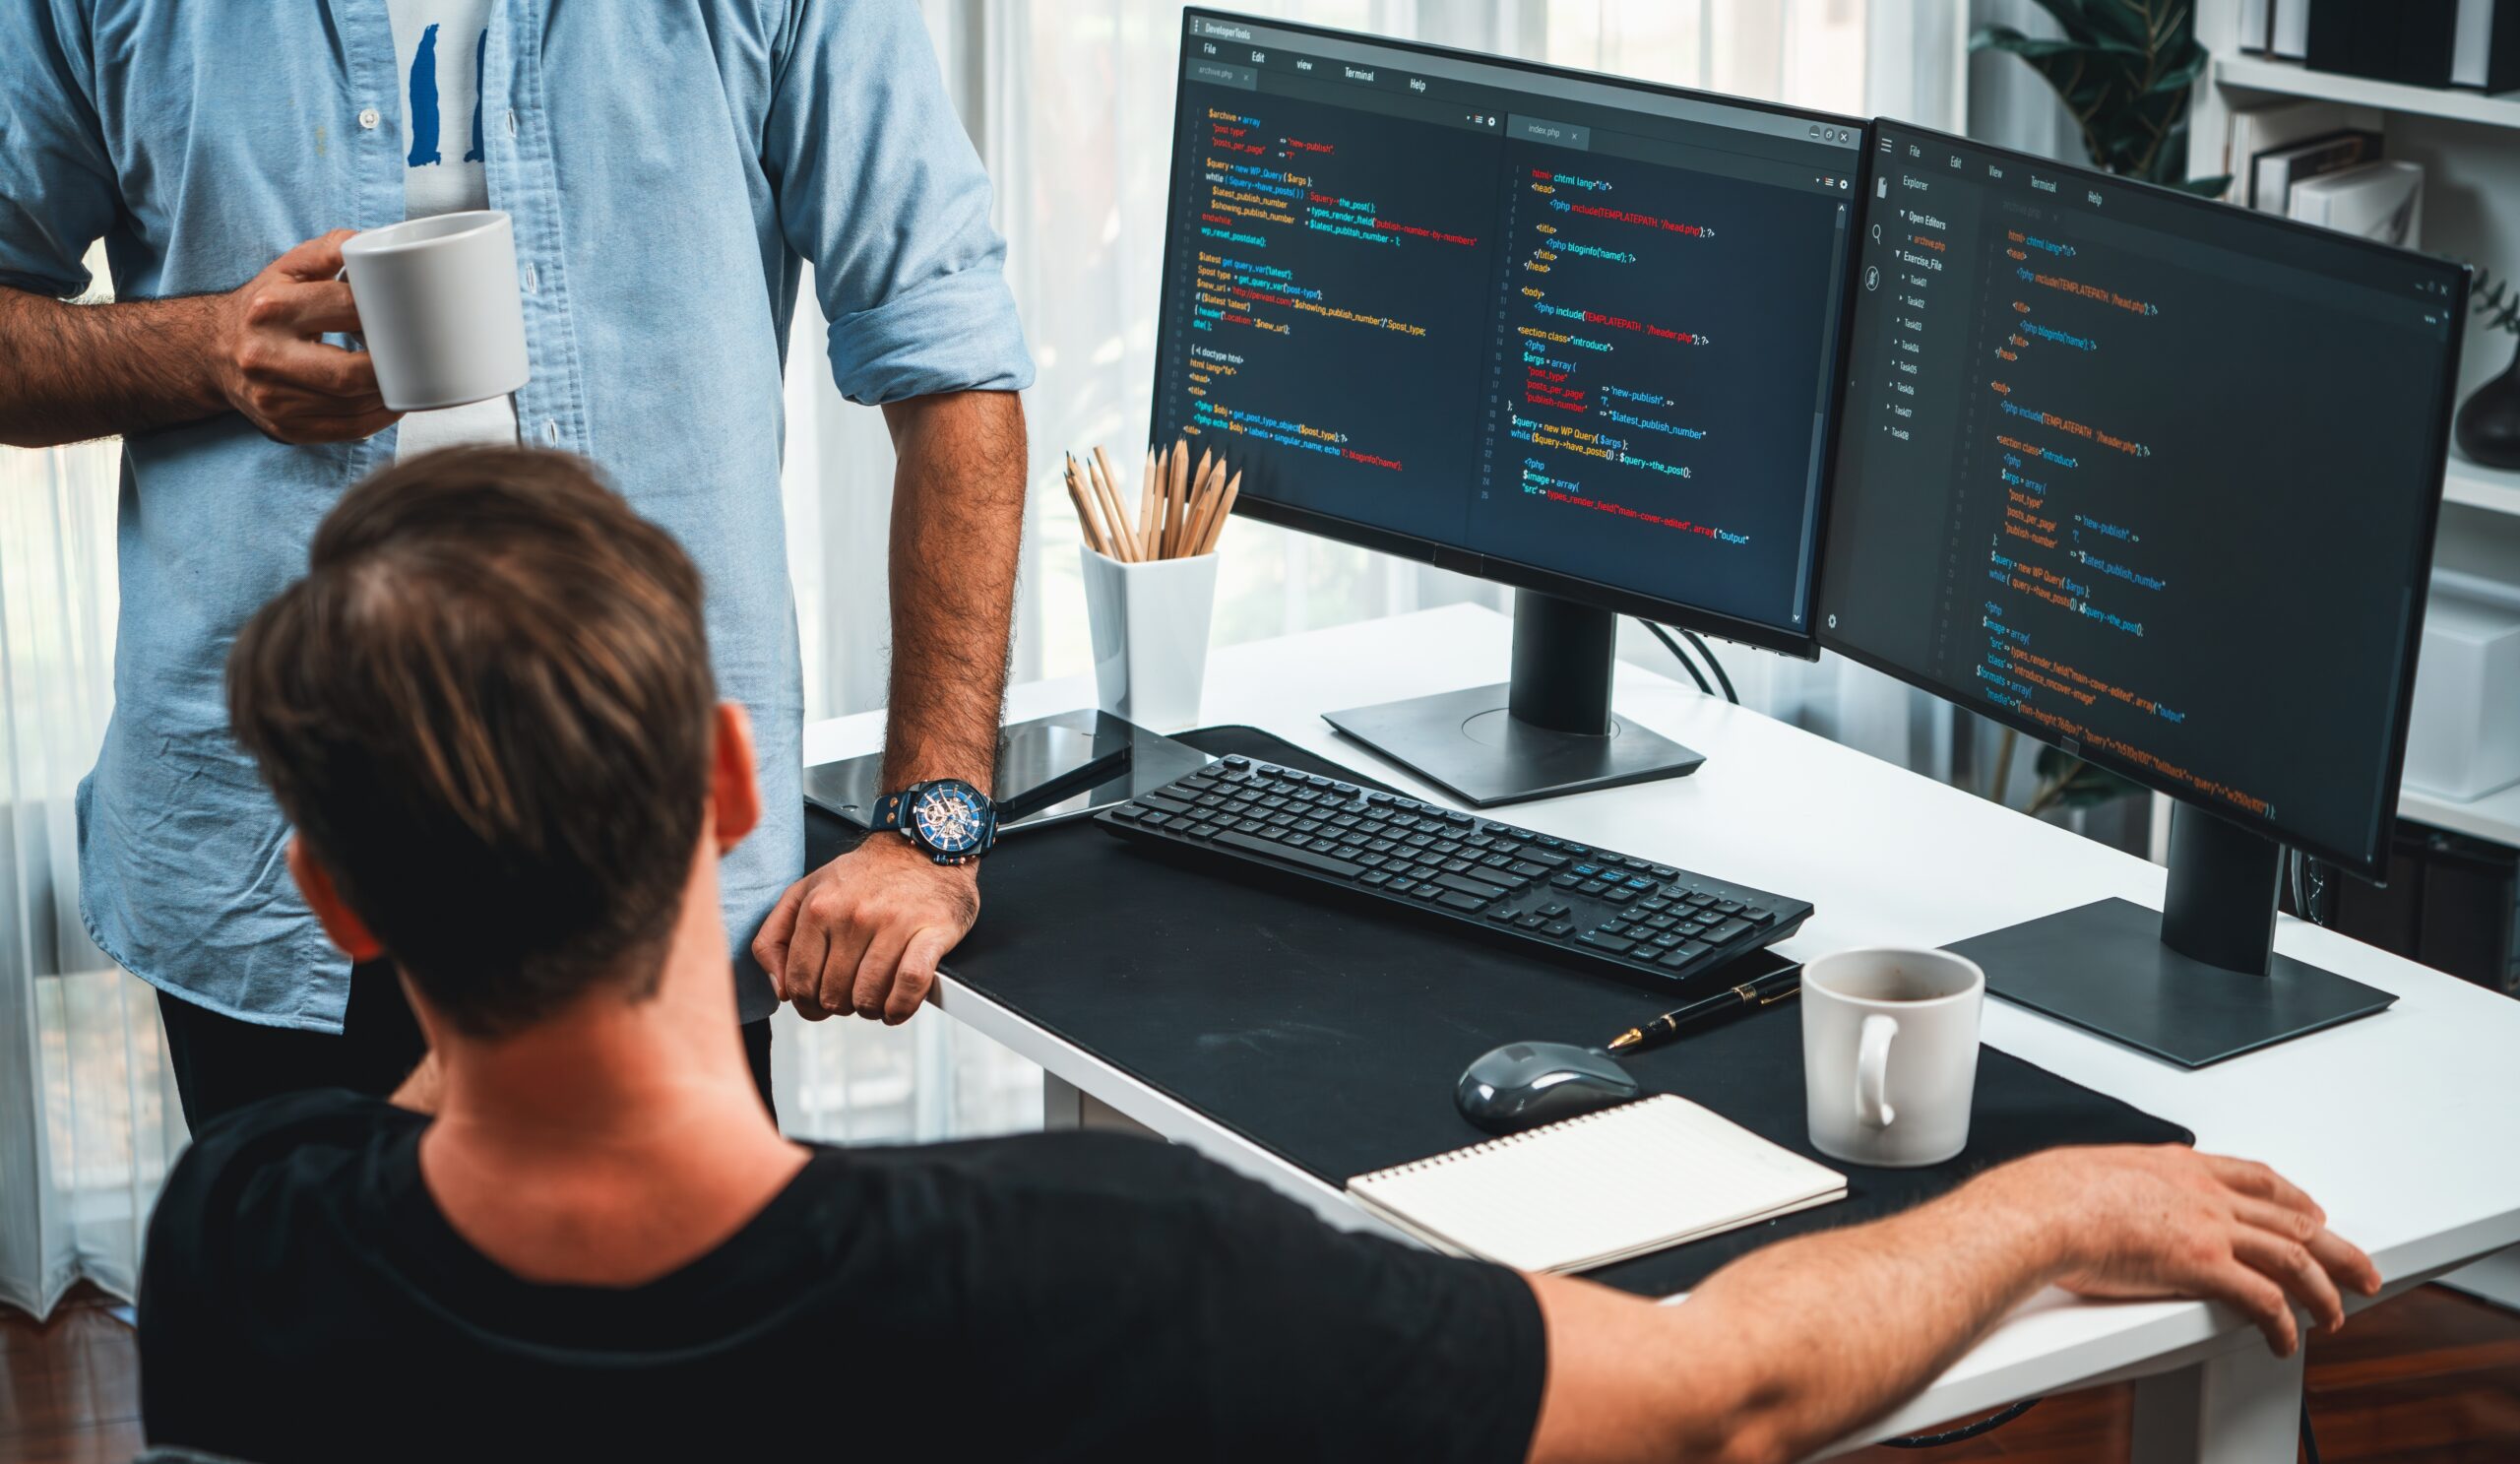 Dwóch mężczyzn pracuje przy biurku z dwoma monitorami wyświetlającymi kod programistyczny, jeden siedzi, drugi stoi z filiżanką kawy.